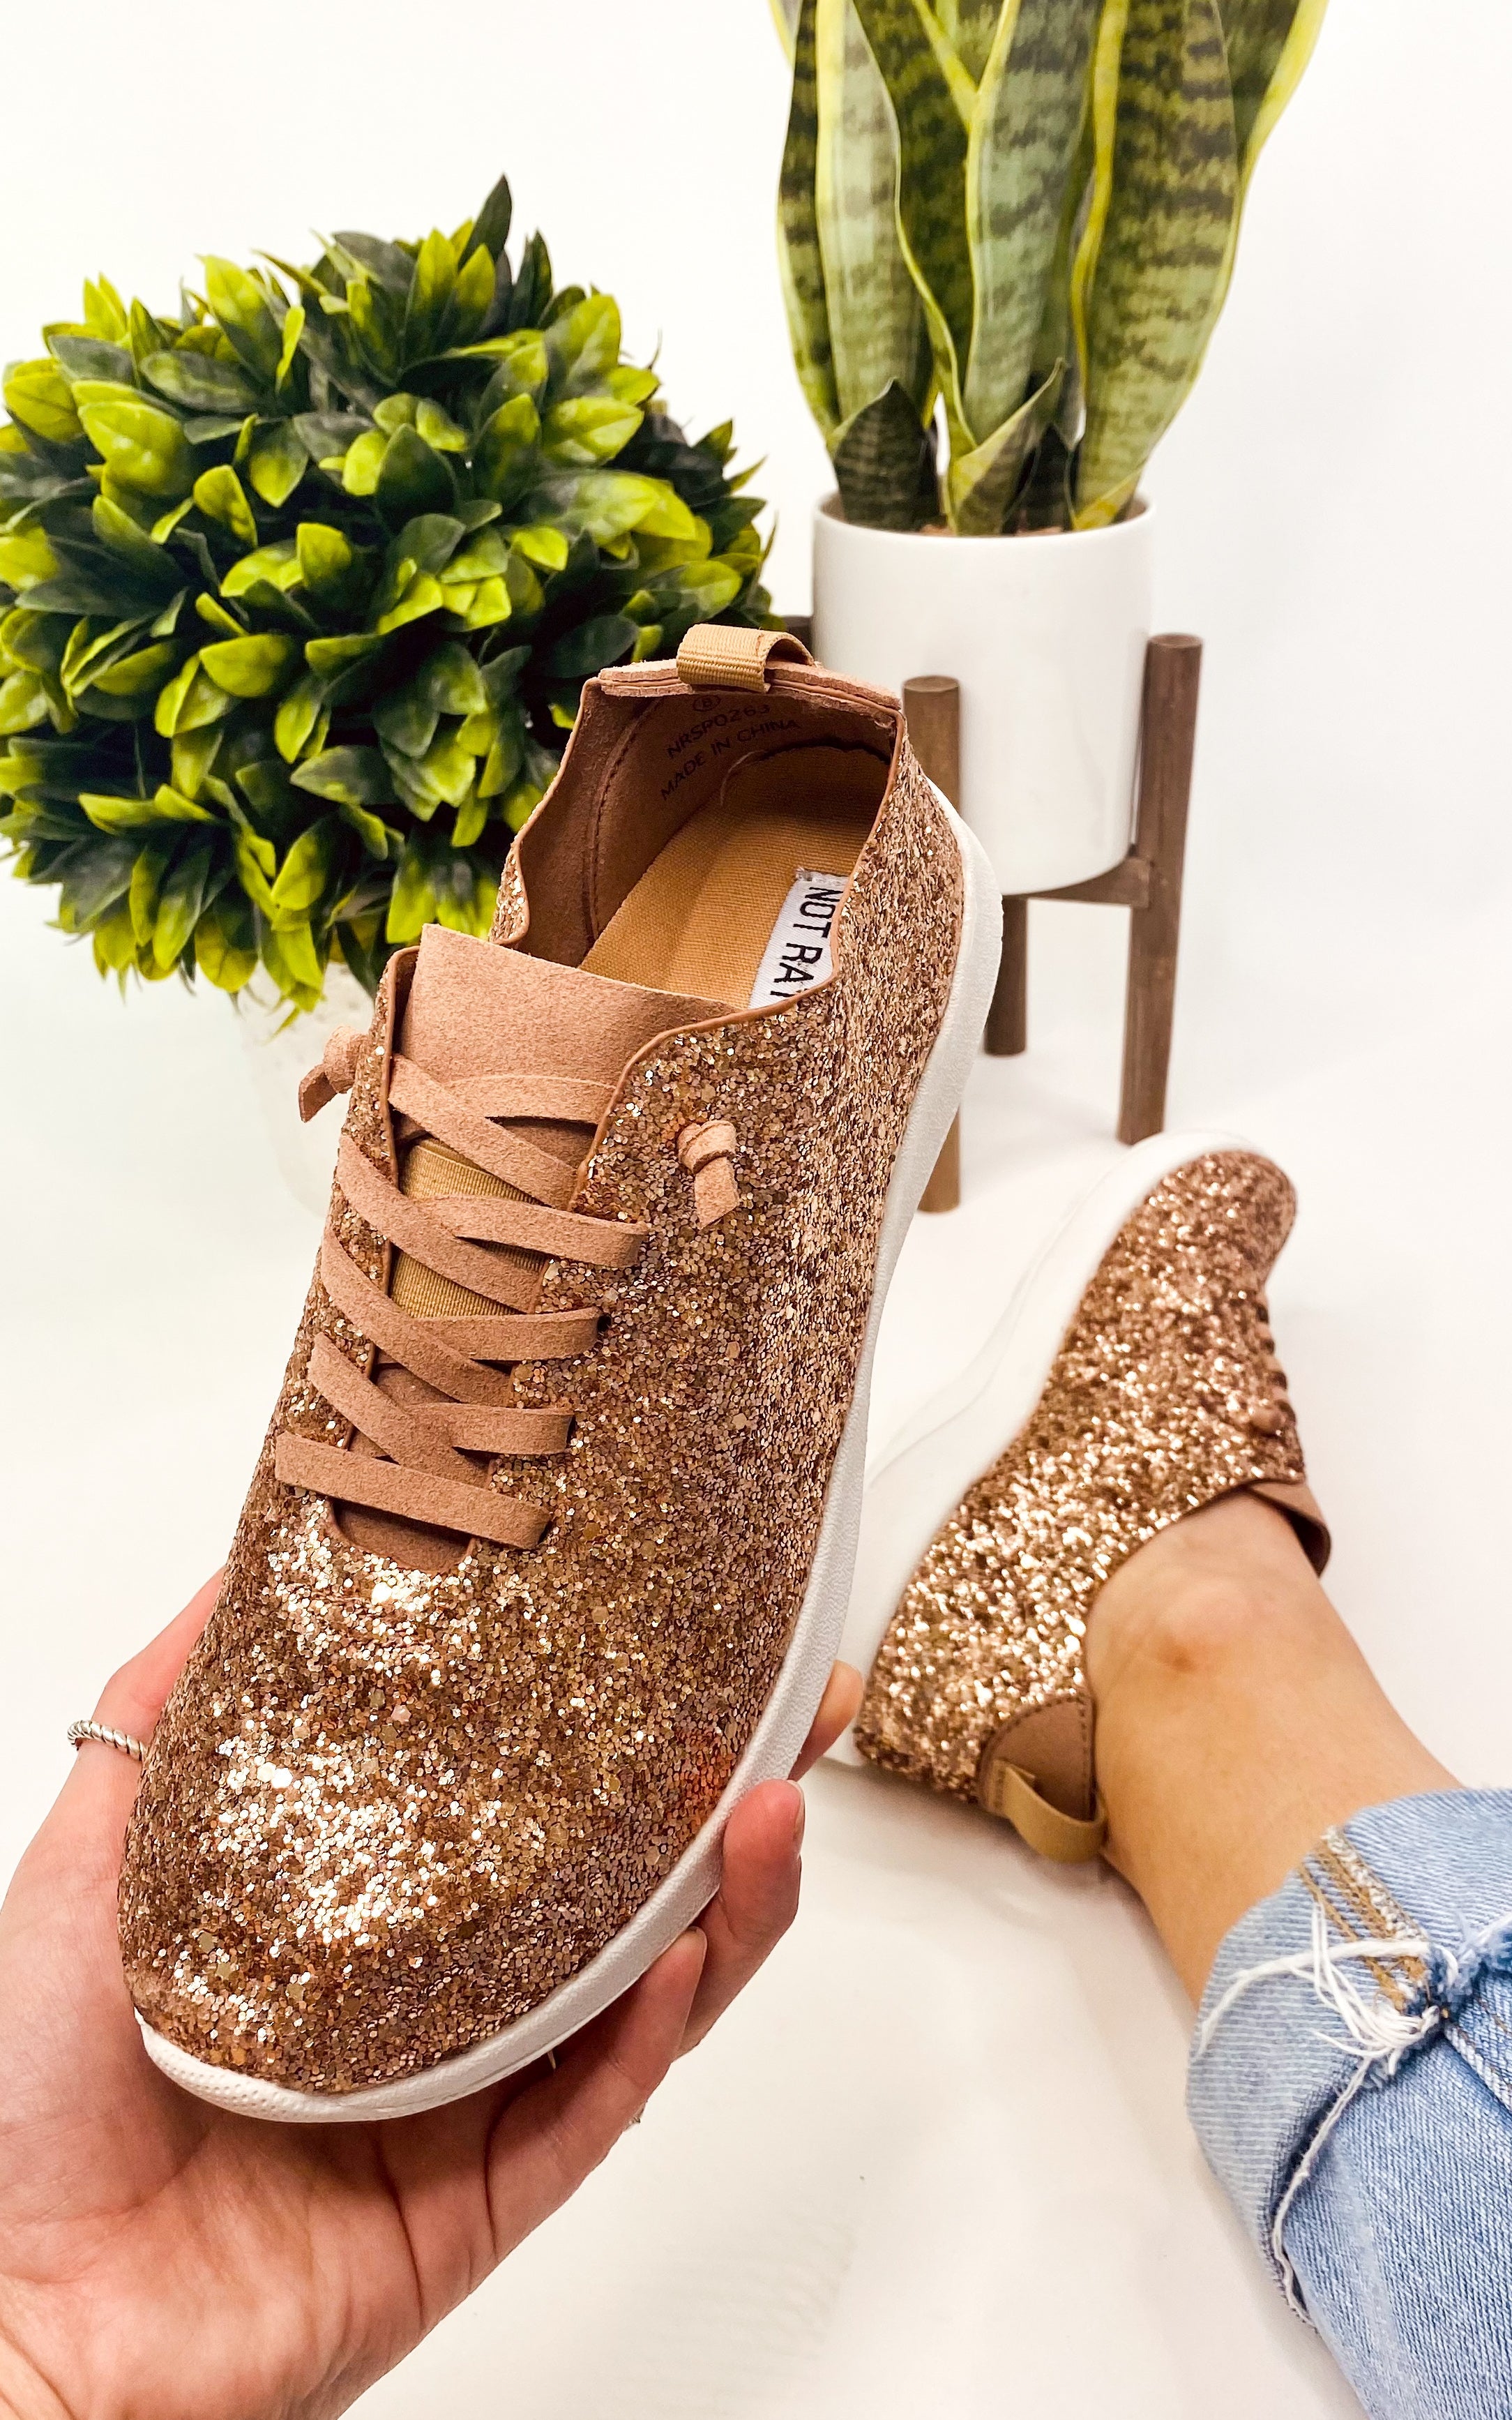 Women's Gold Glitter Sneakers | Size 8